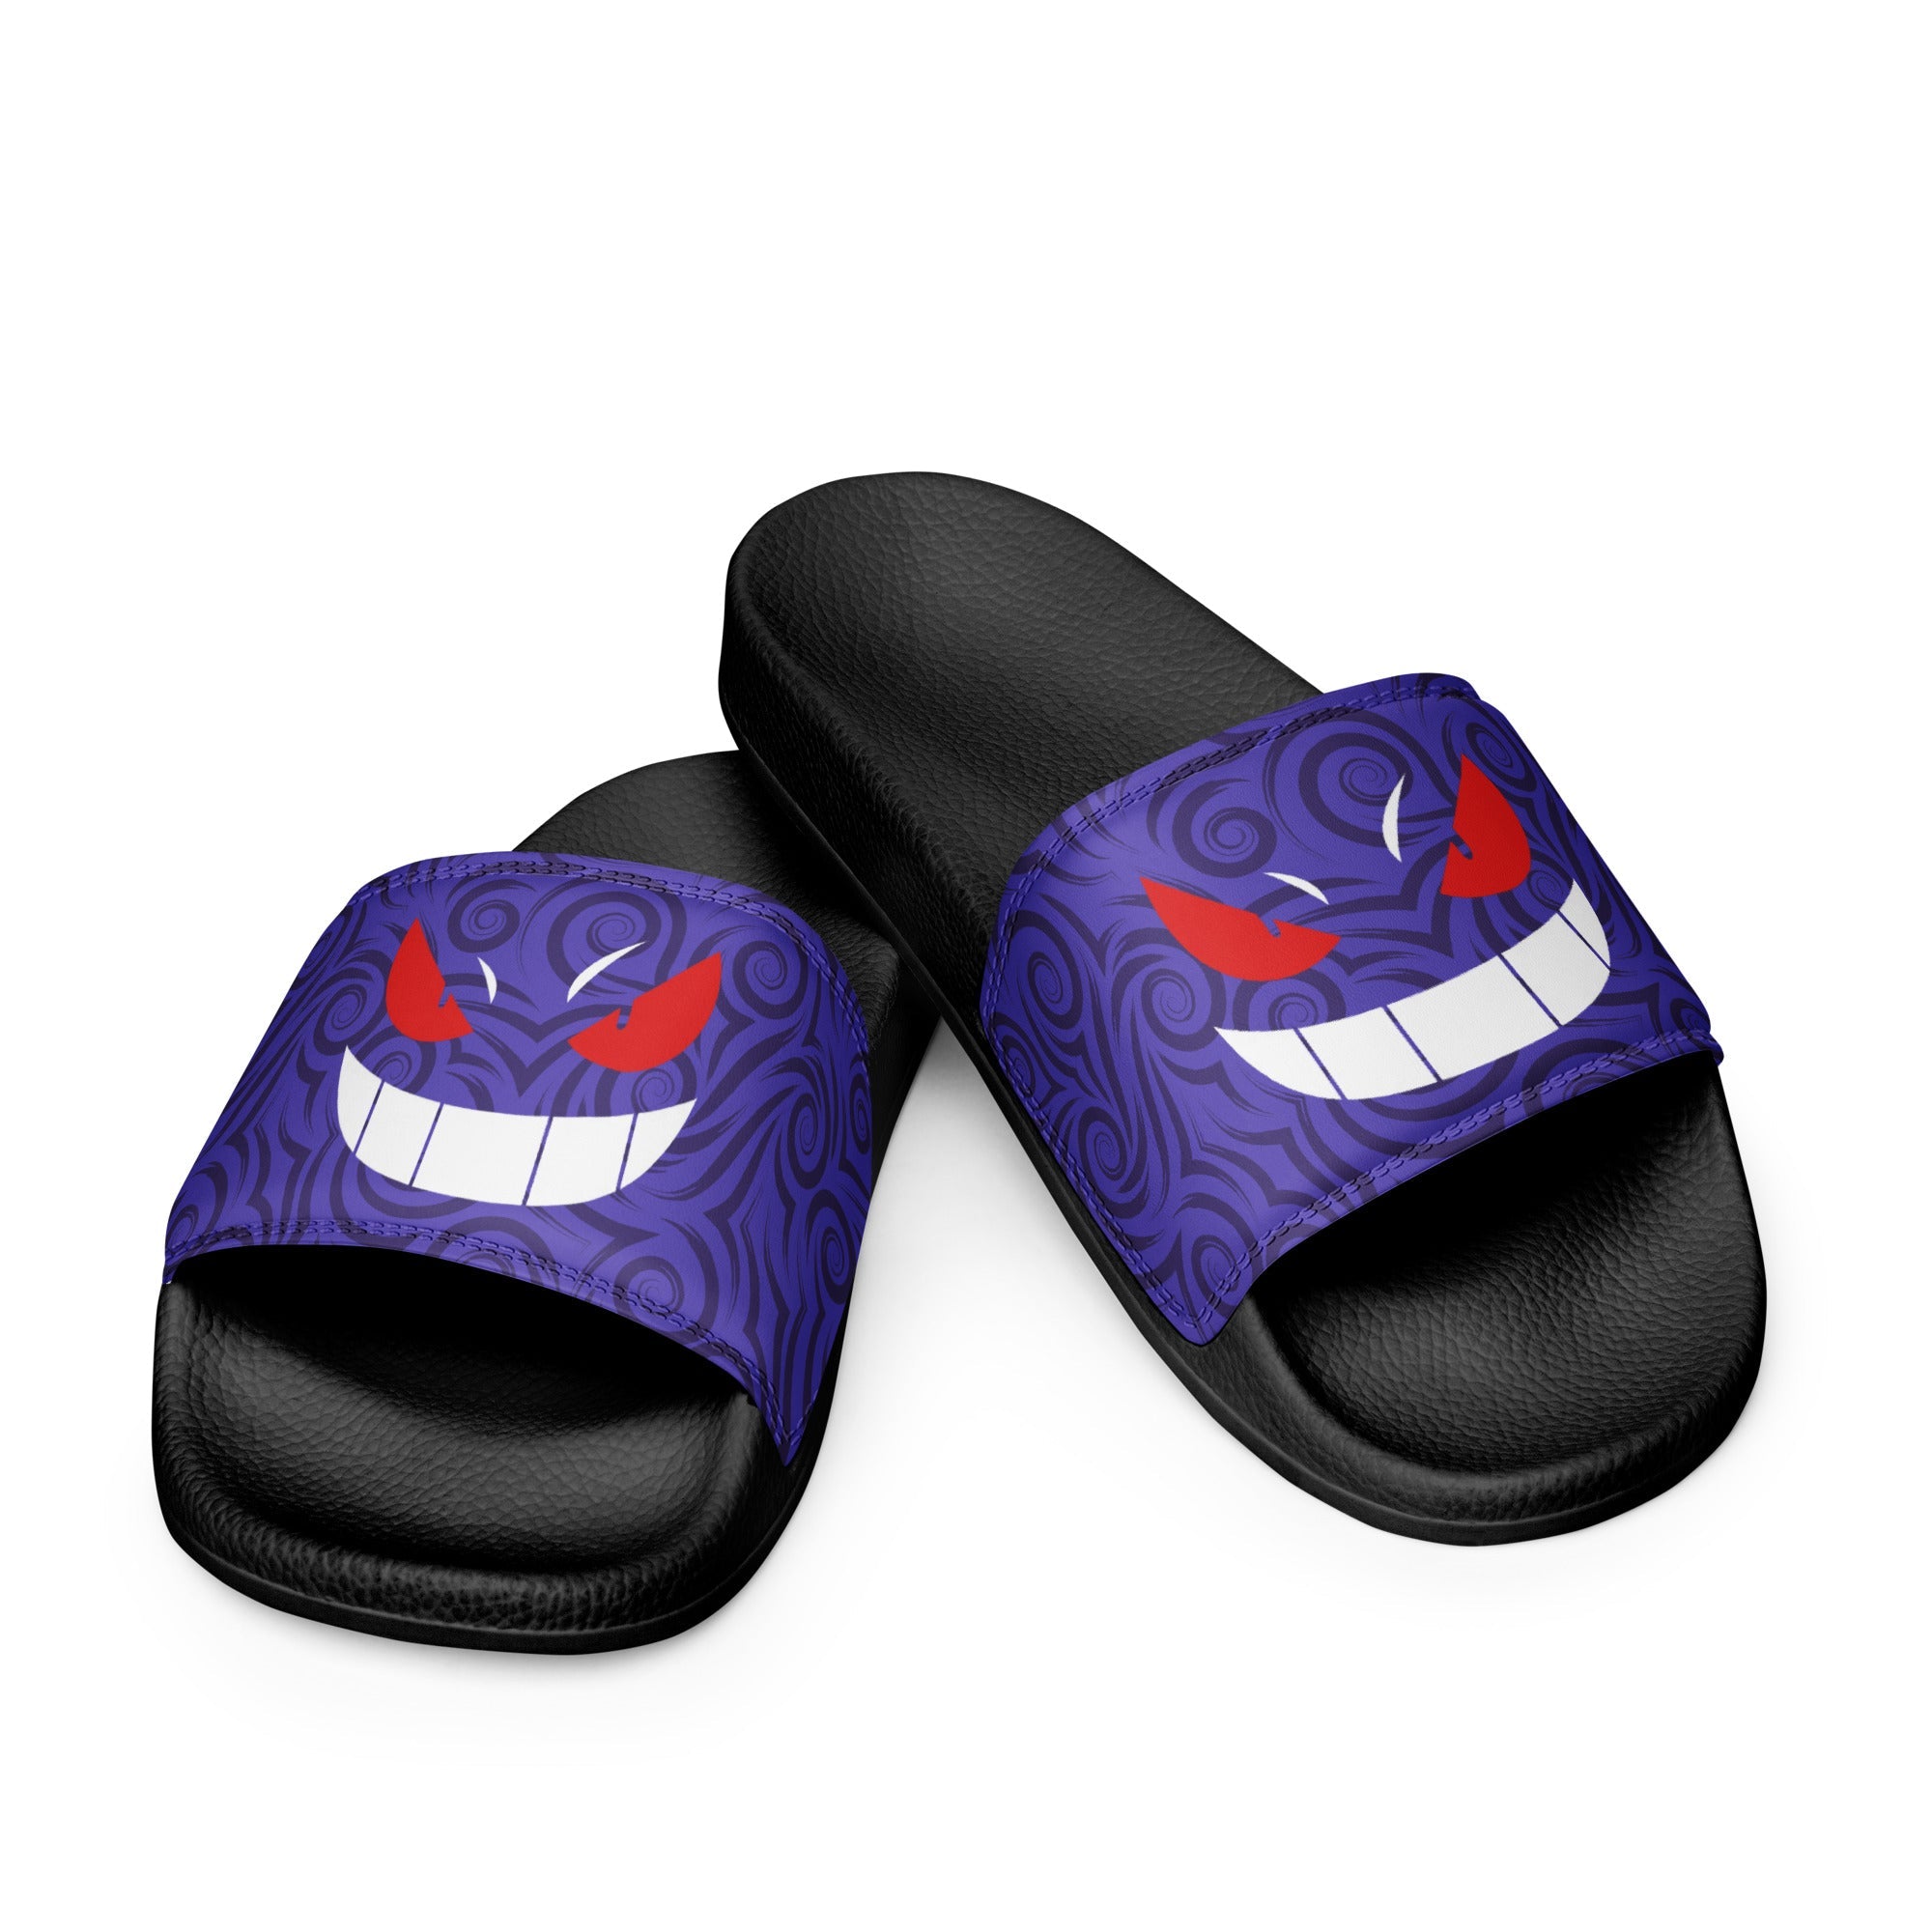 Anime Slide Sandals Slipper For Men Women Kids Cosplay Shoes Comic  Flip-flops Summer Slippers New 01 - AliExpress